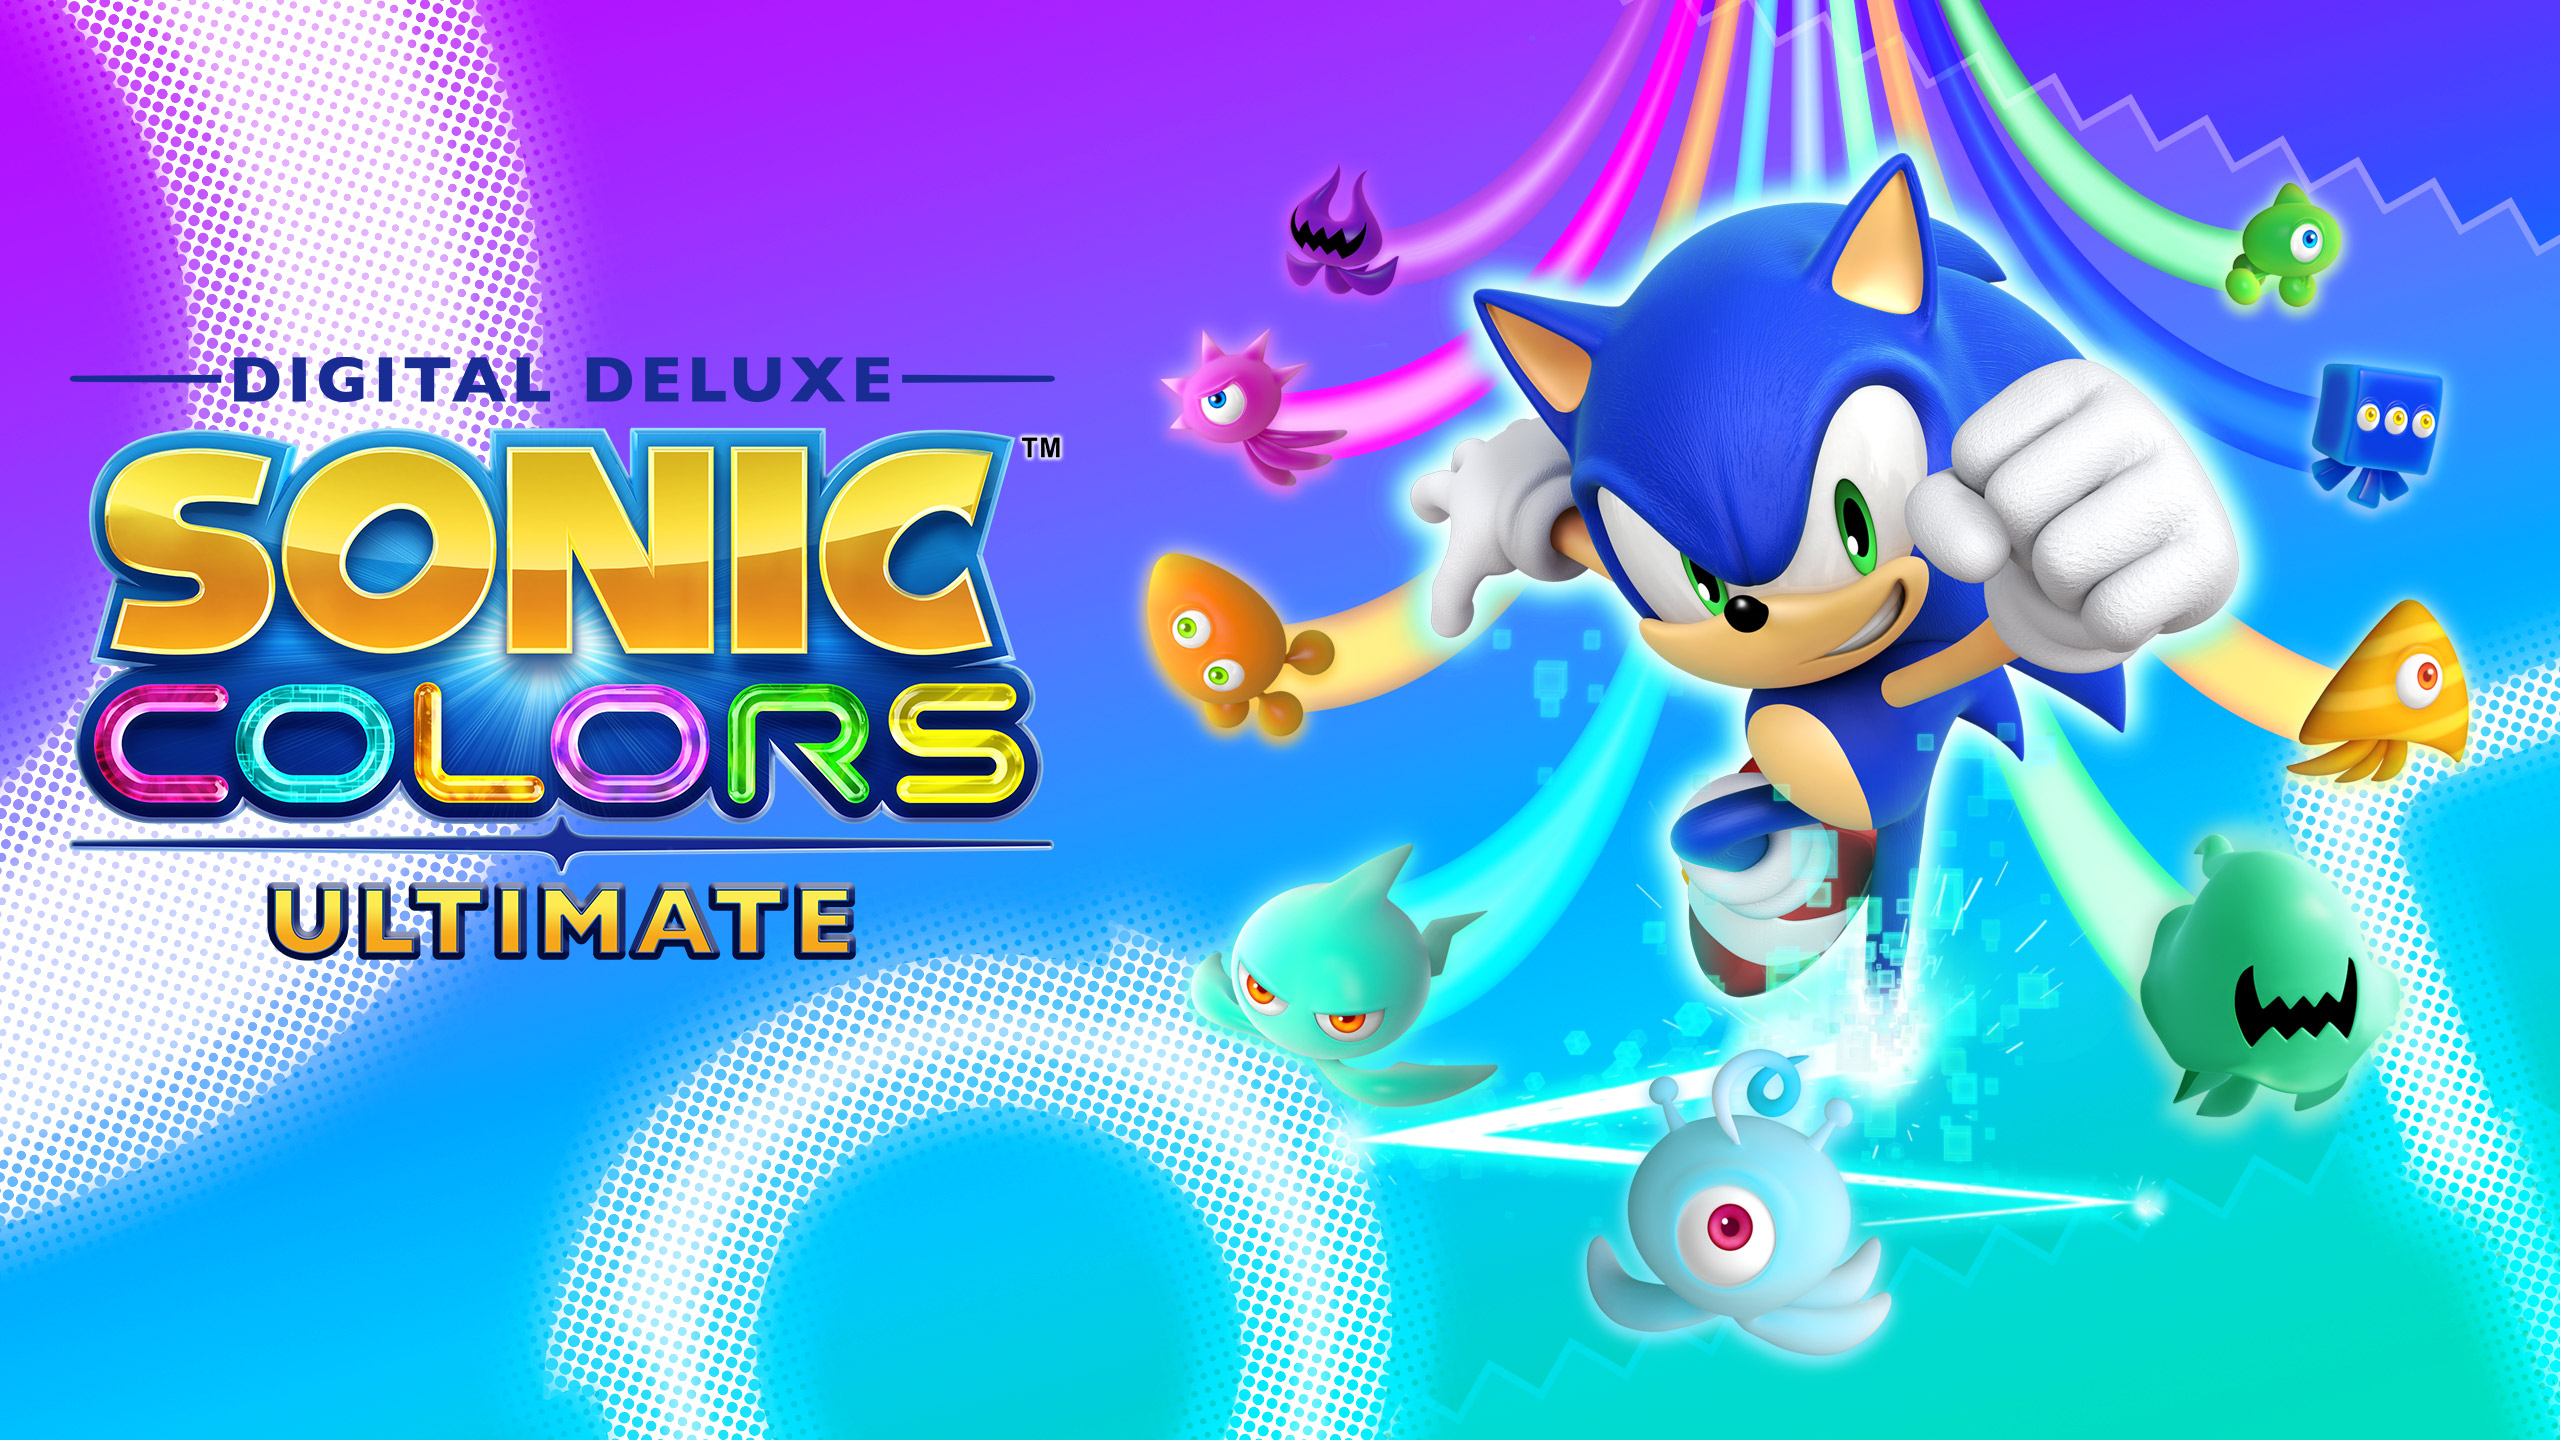 Sonic Colors Ultieme patch onderweg om lanceringsproblemen op te lossen!